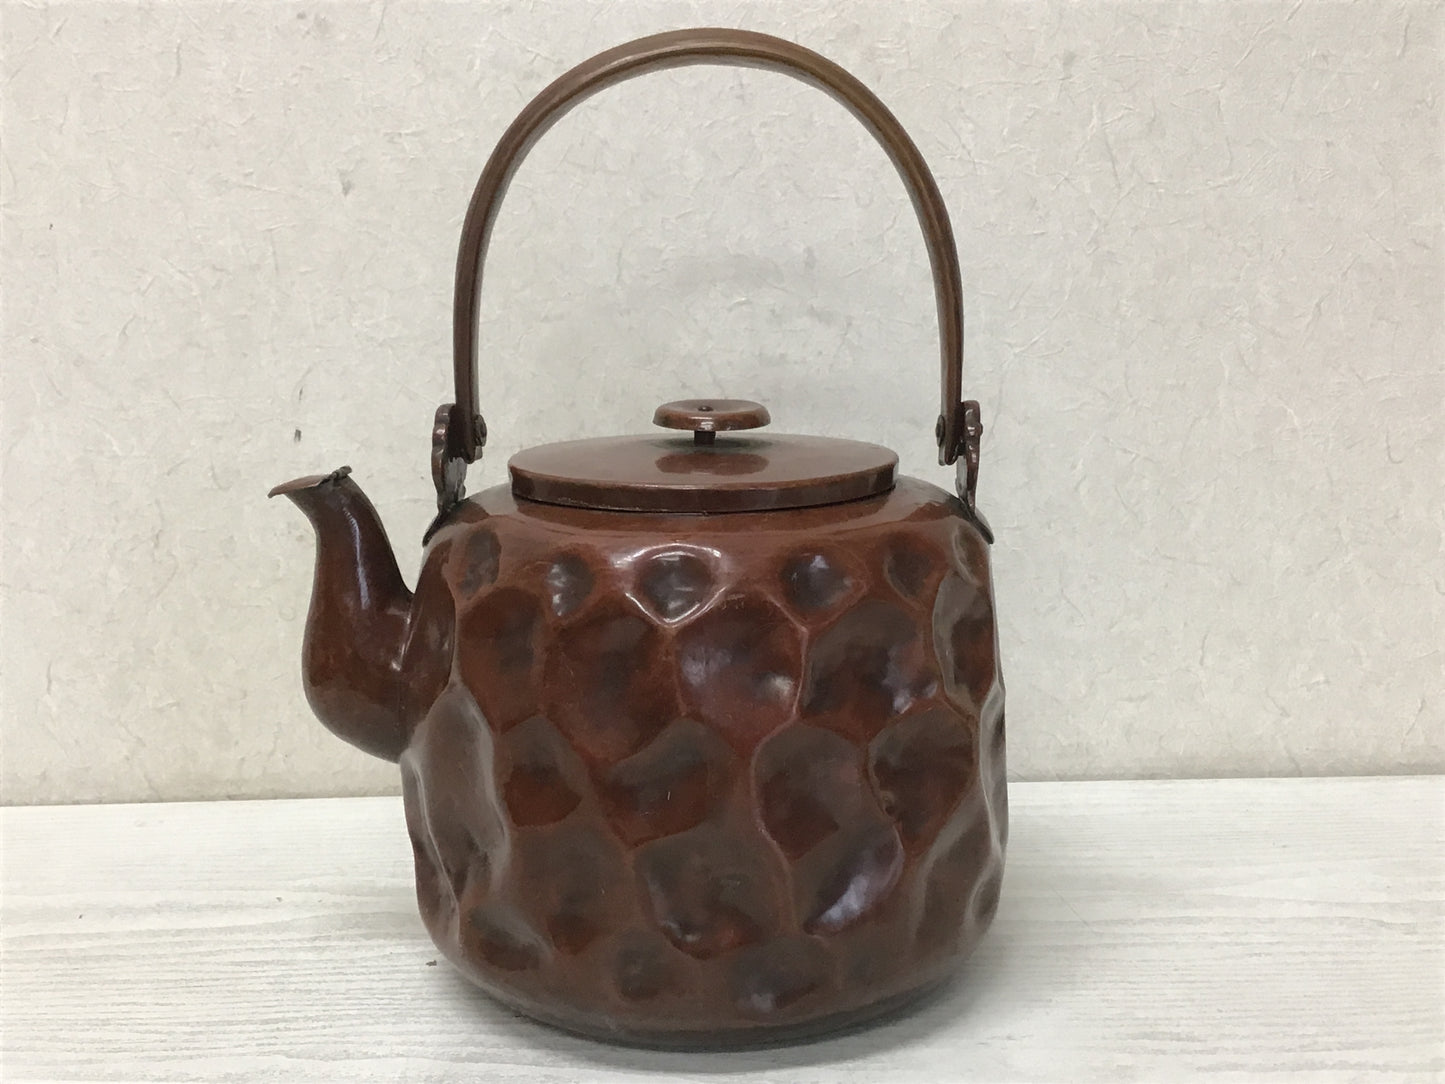 Y1934 TEA POT Copper Kettle uneven Japanese Tea Ceremony antique teapot Japan